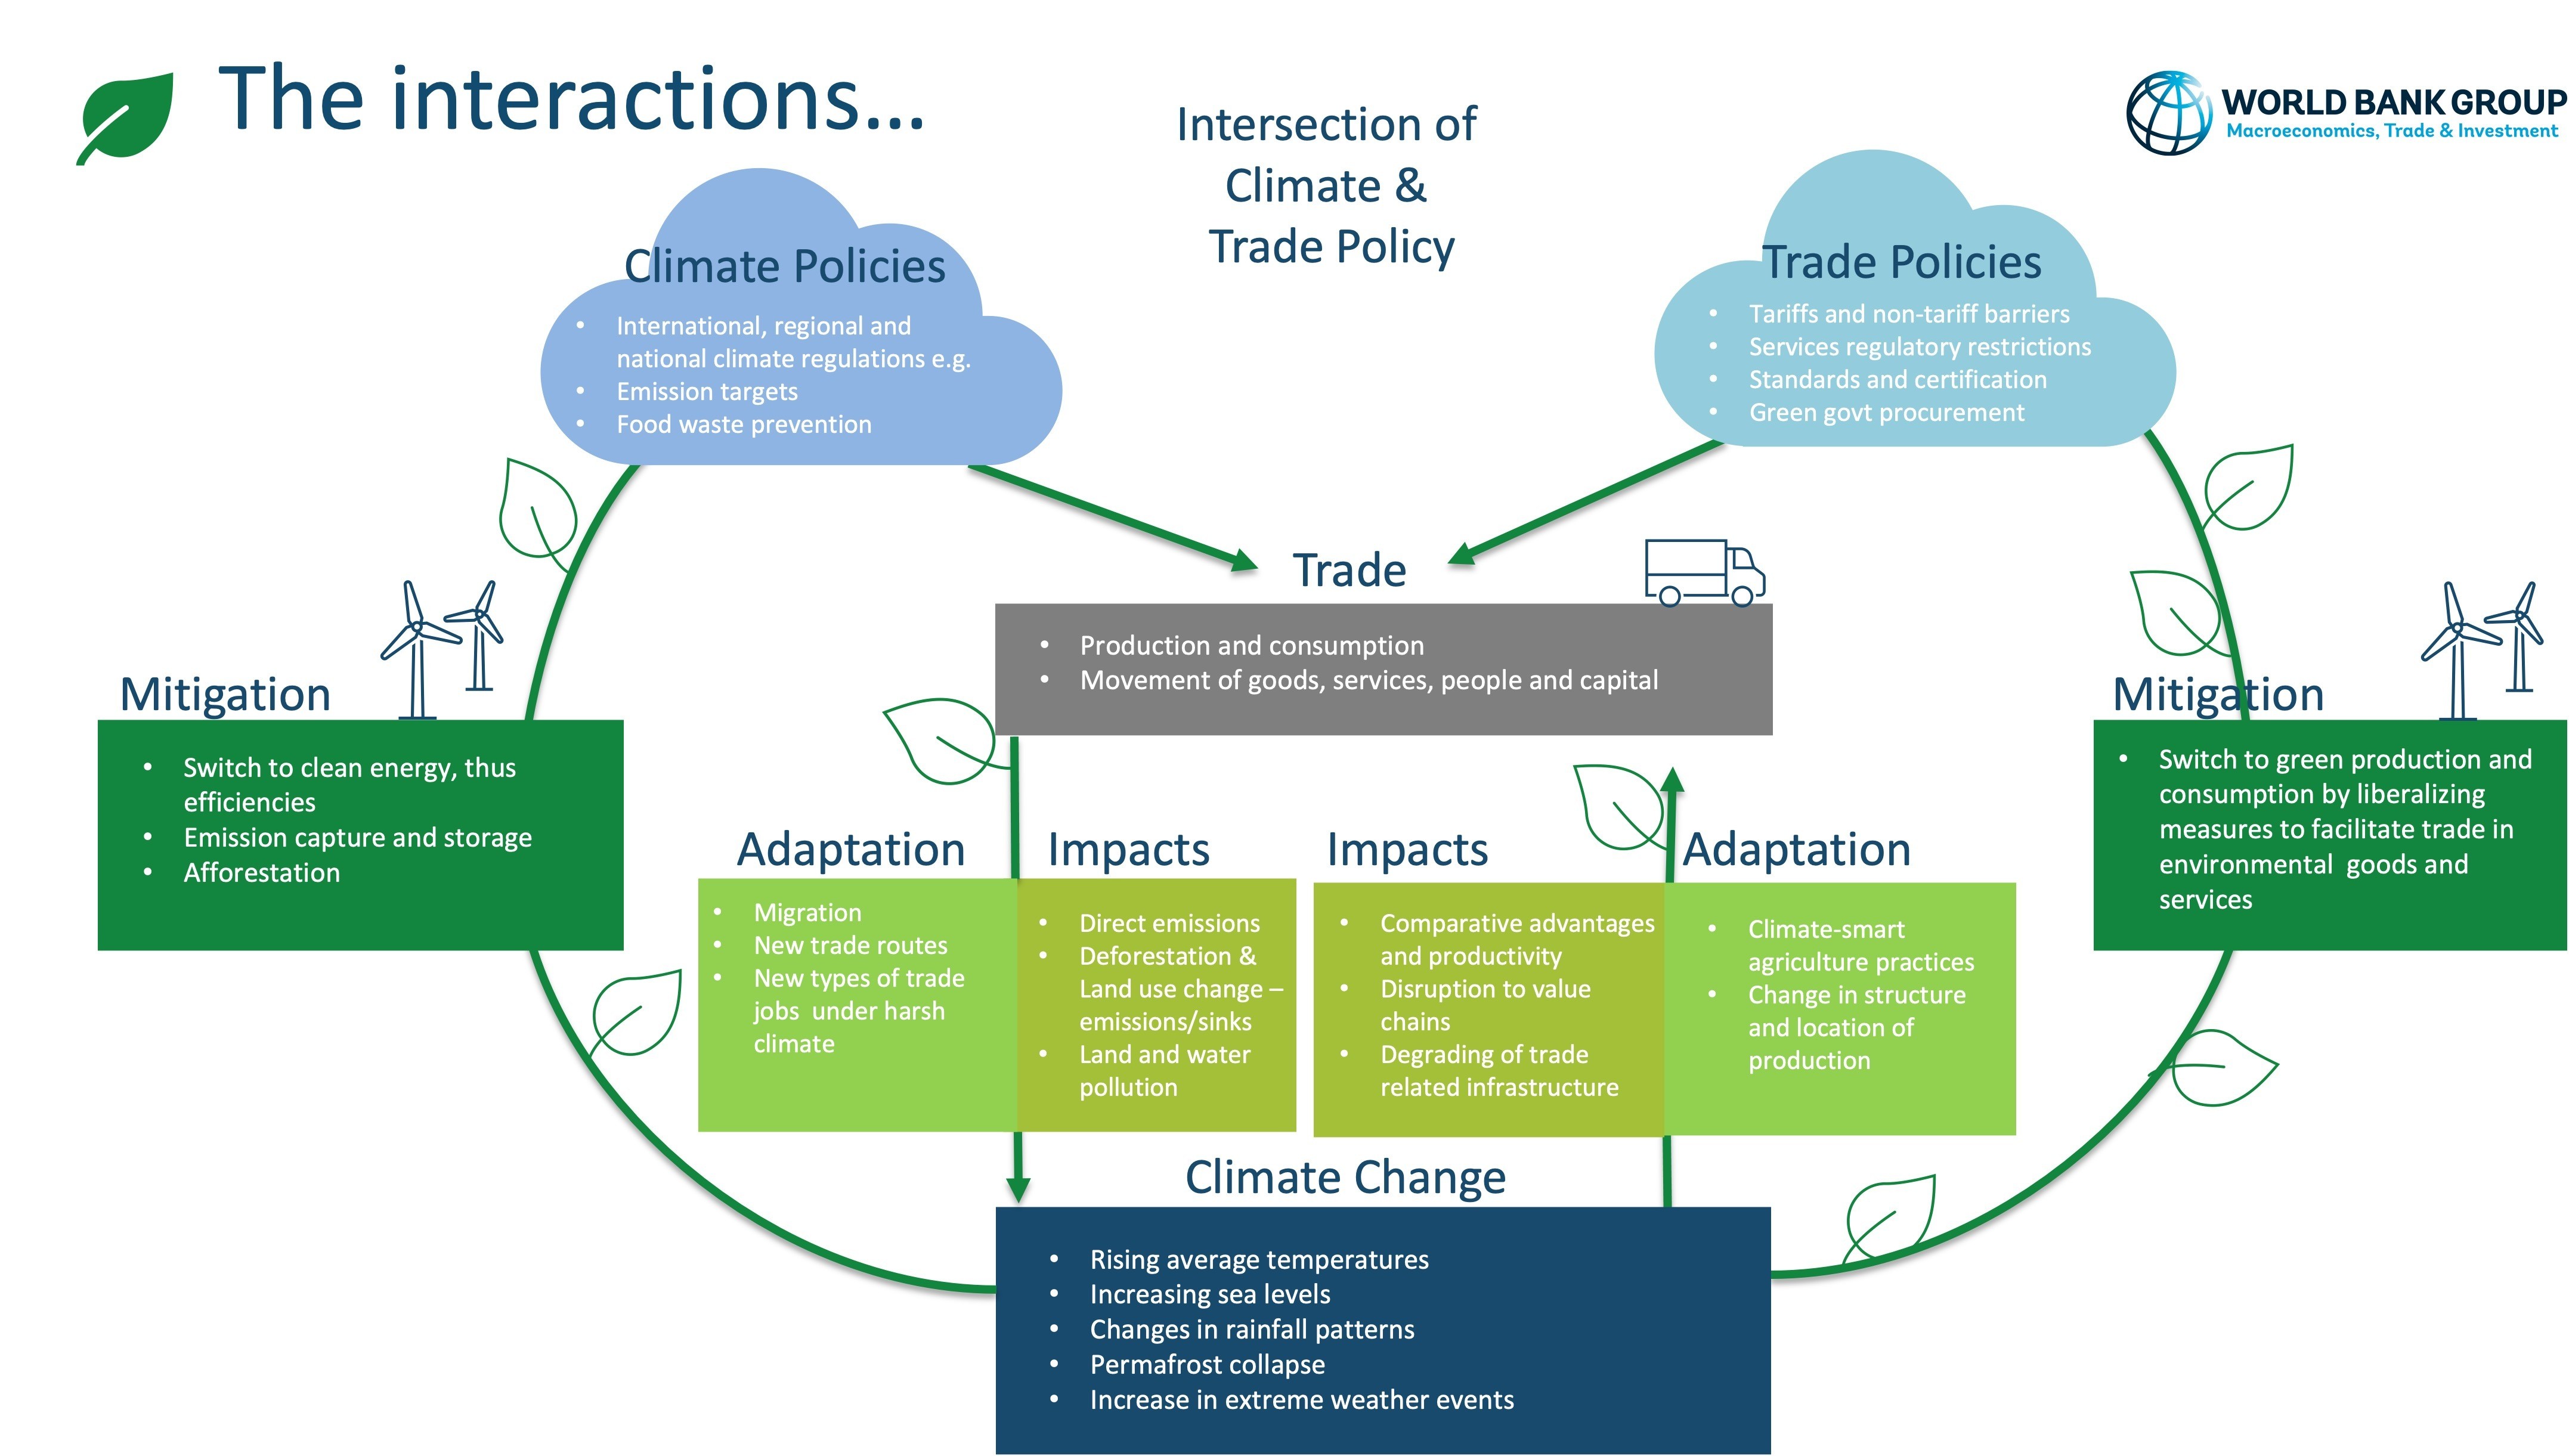 贸易可以在多个层面上影响我们应对气候变化的斗争